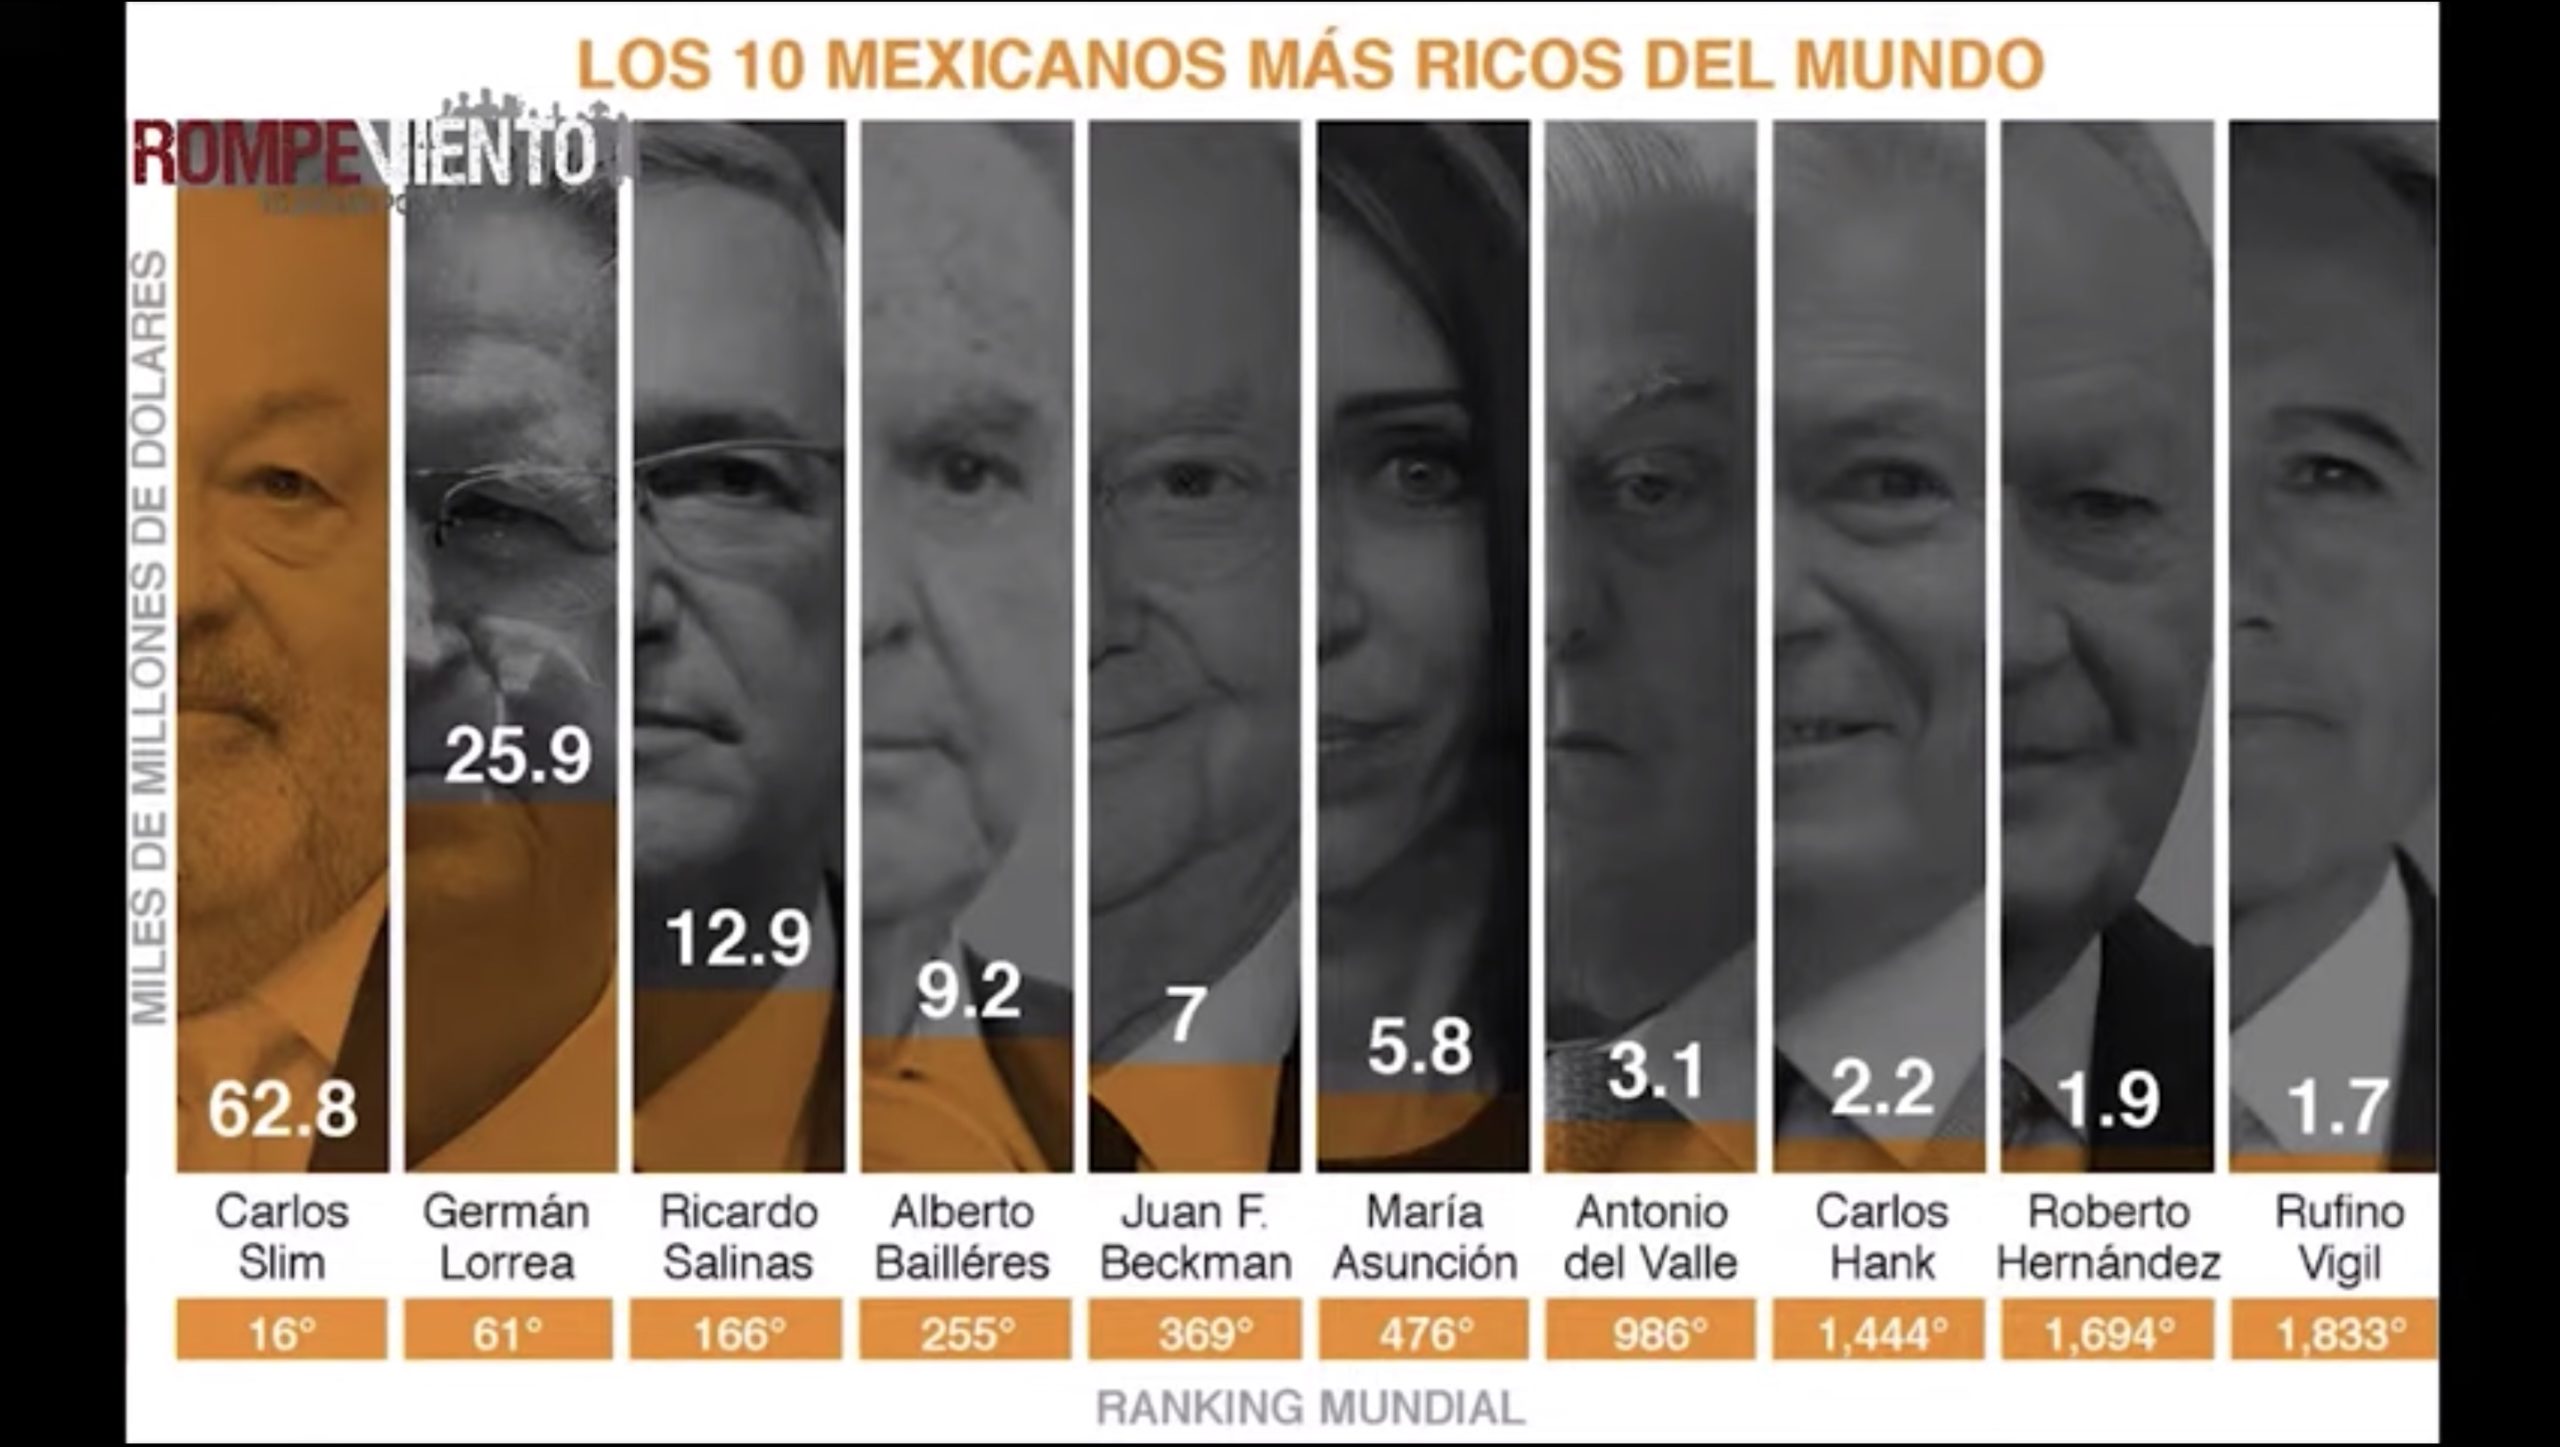 Y aún sin offshores, en México siempre ganan los mismos - Mirada Crítica